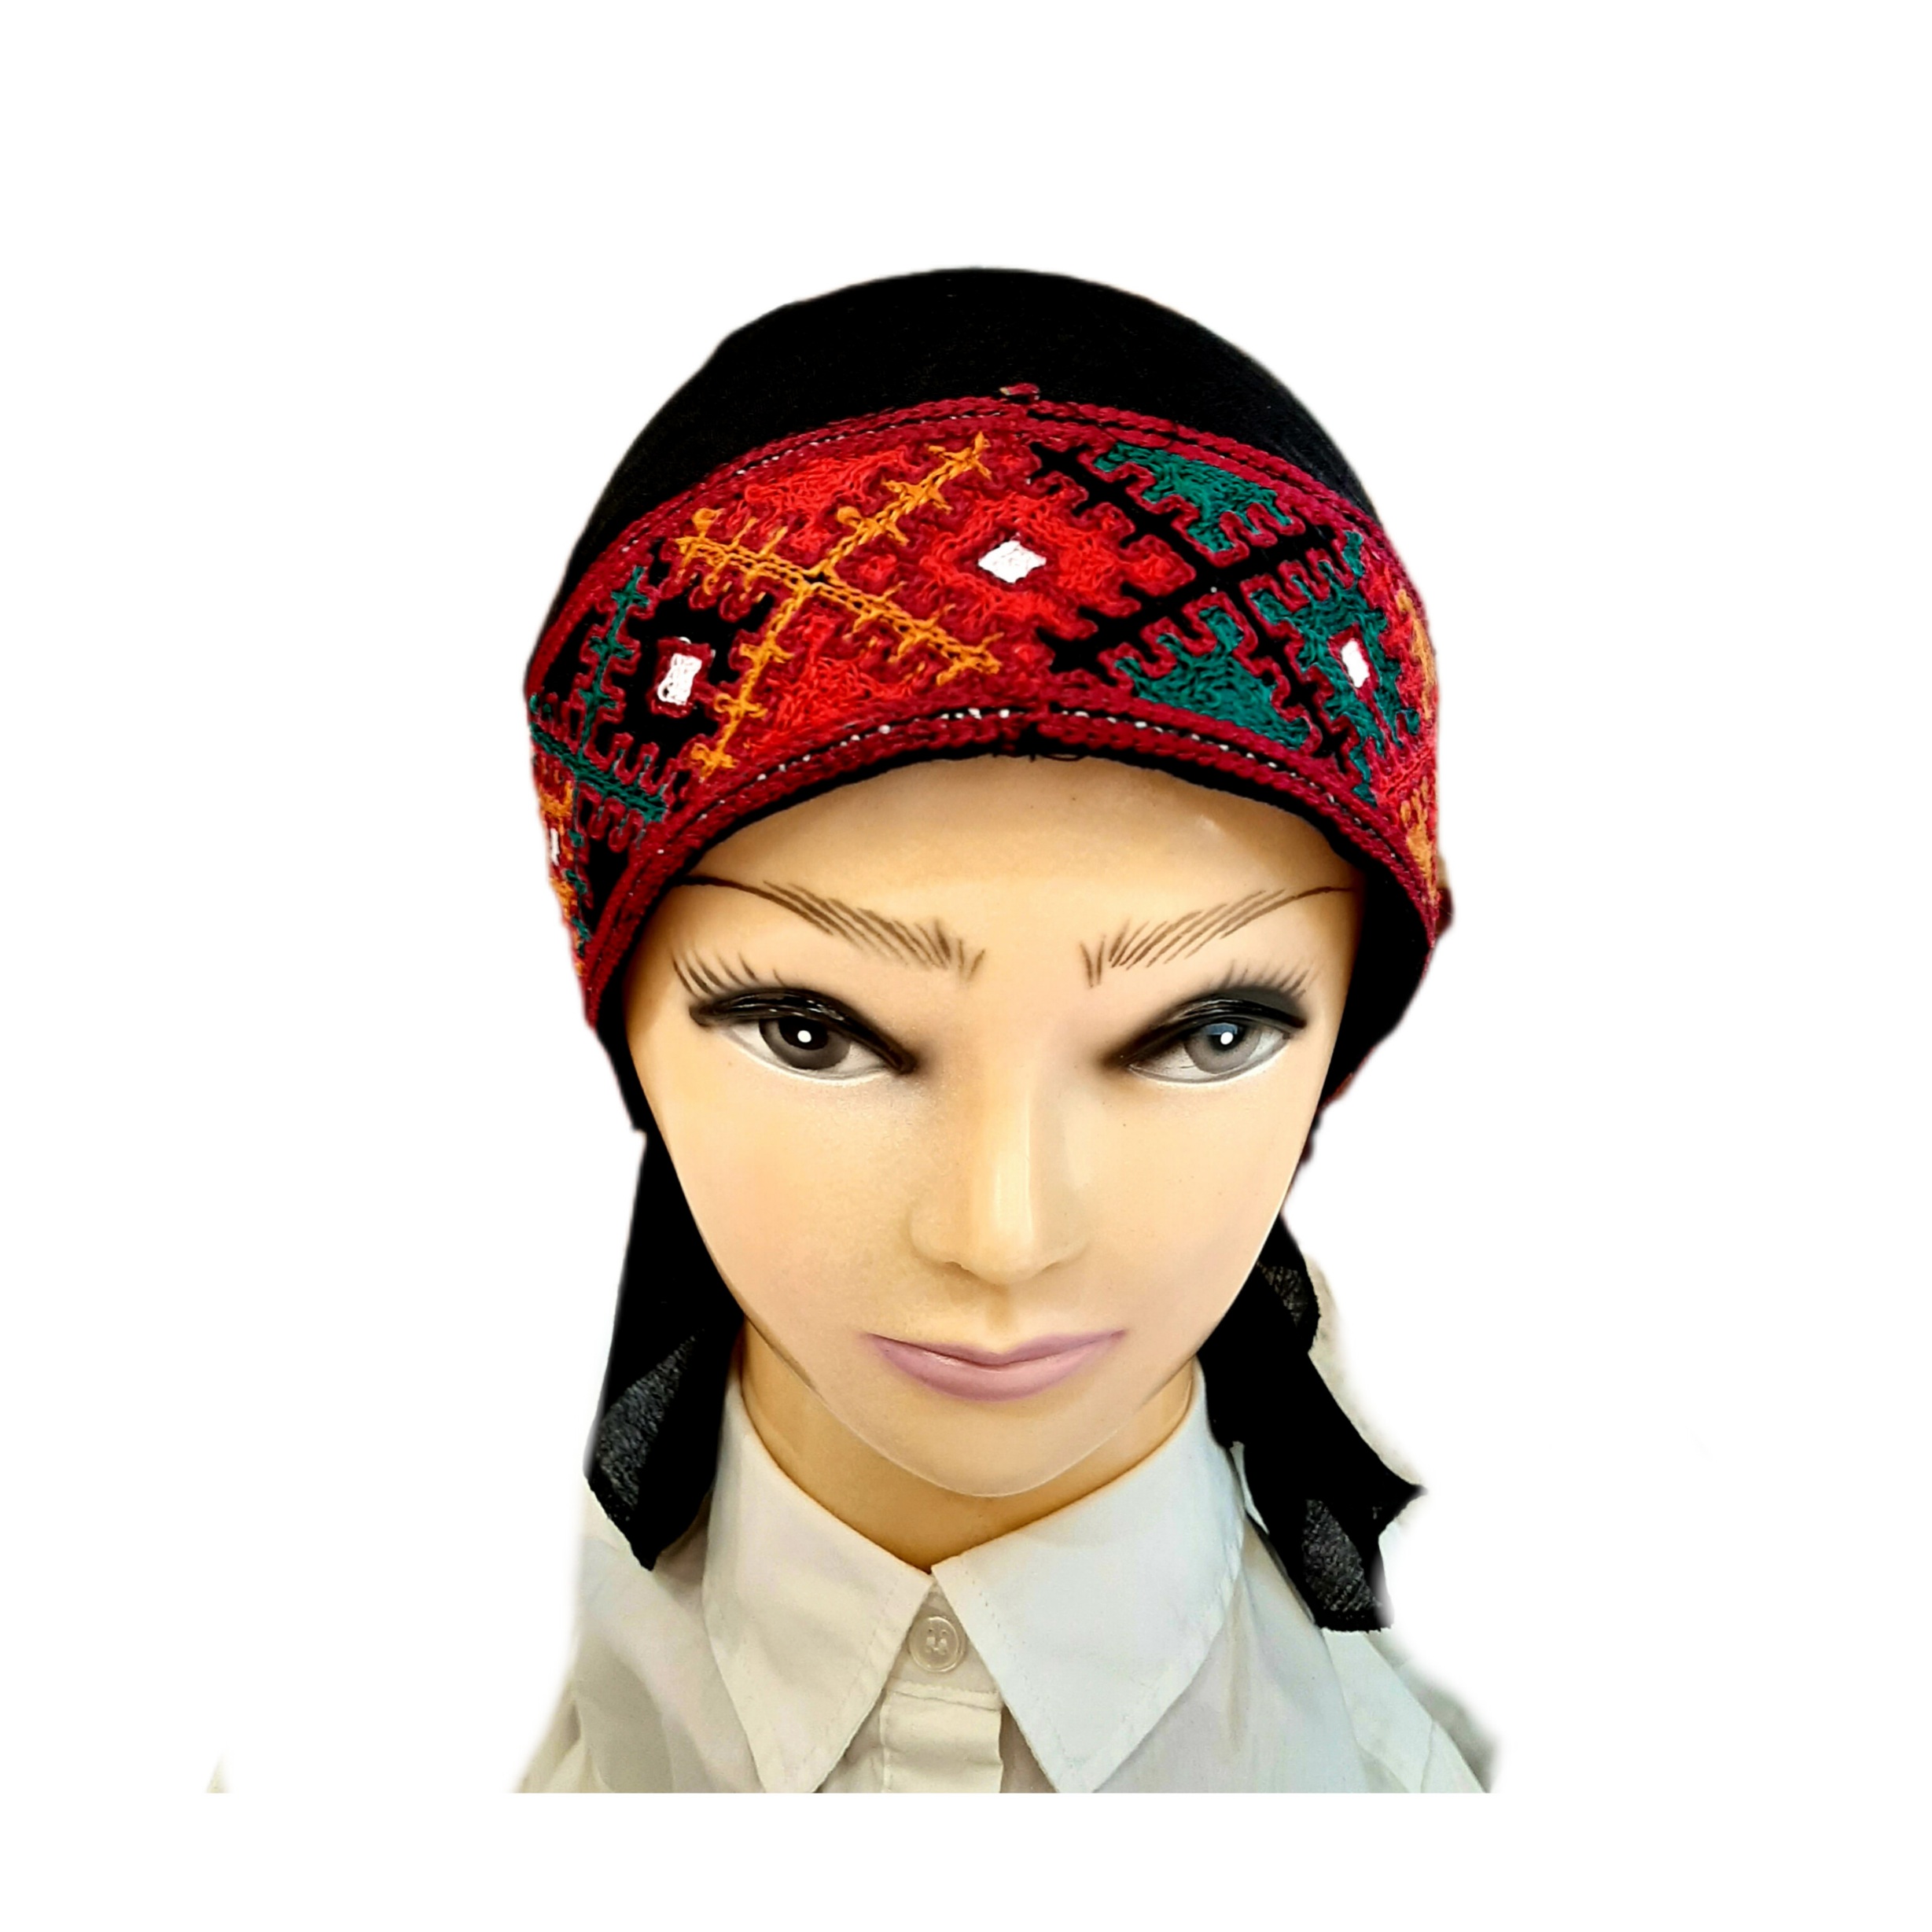 دستمال سر و گردن مدل دورگ سوزندوزی بلوچ